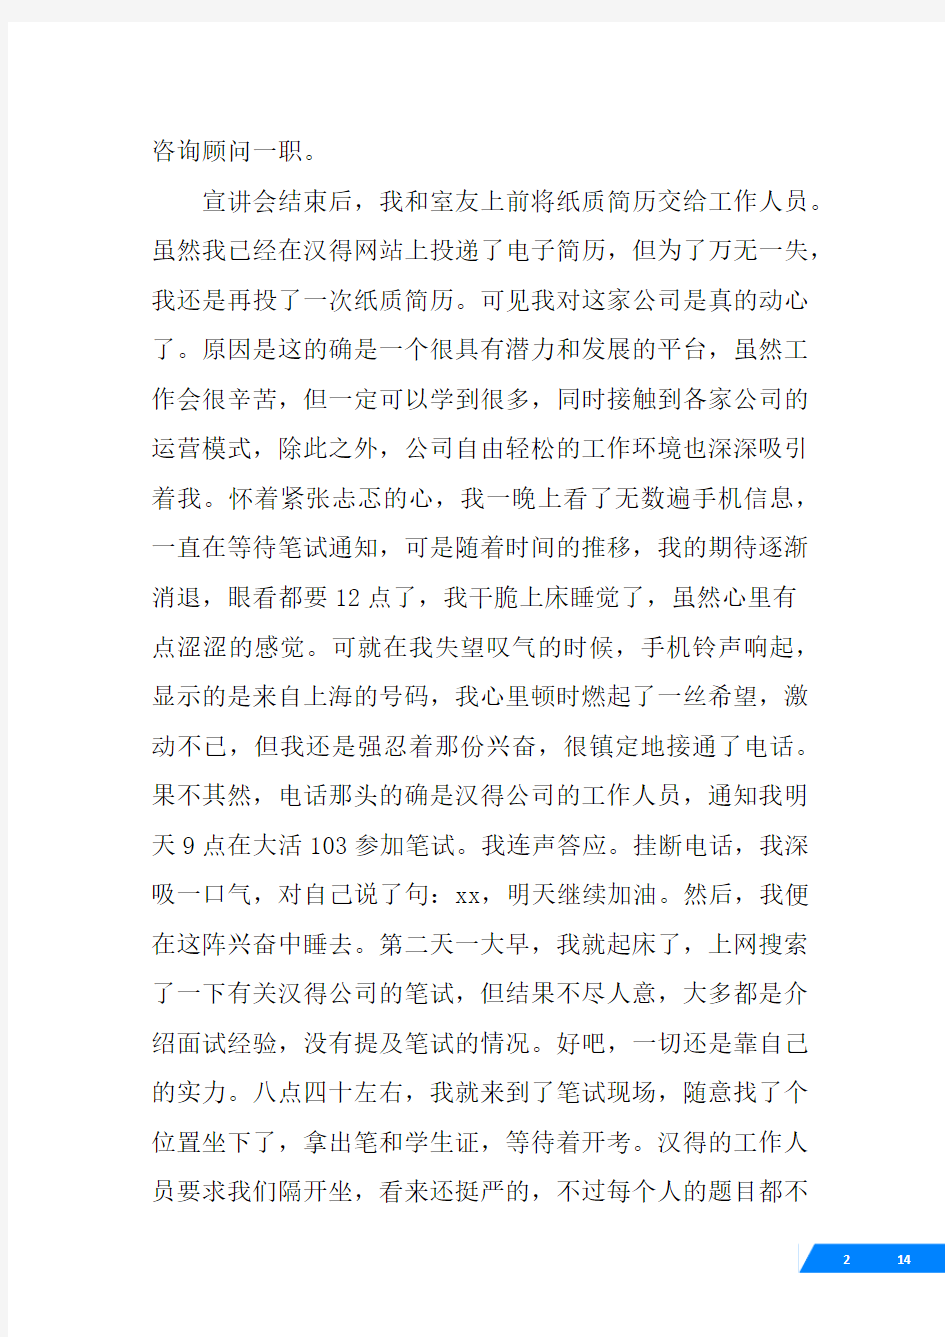 上海期货信息技术有限公司面试